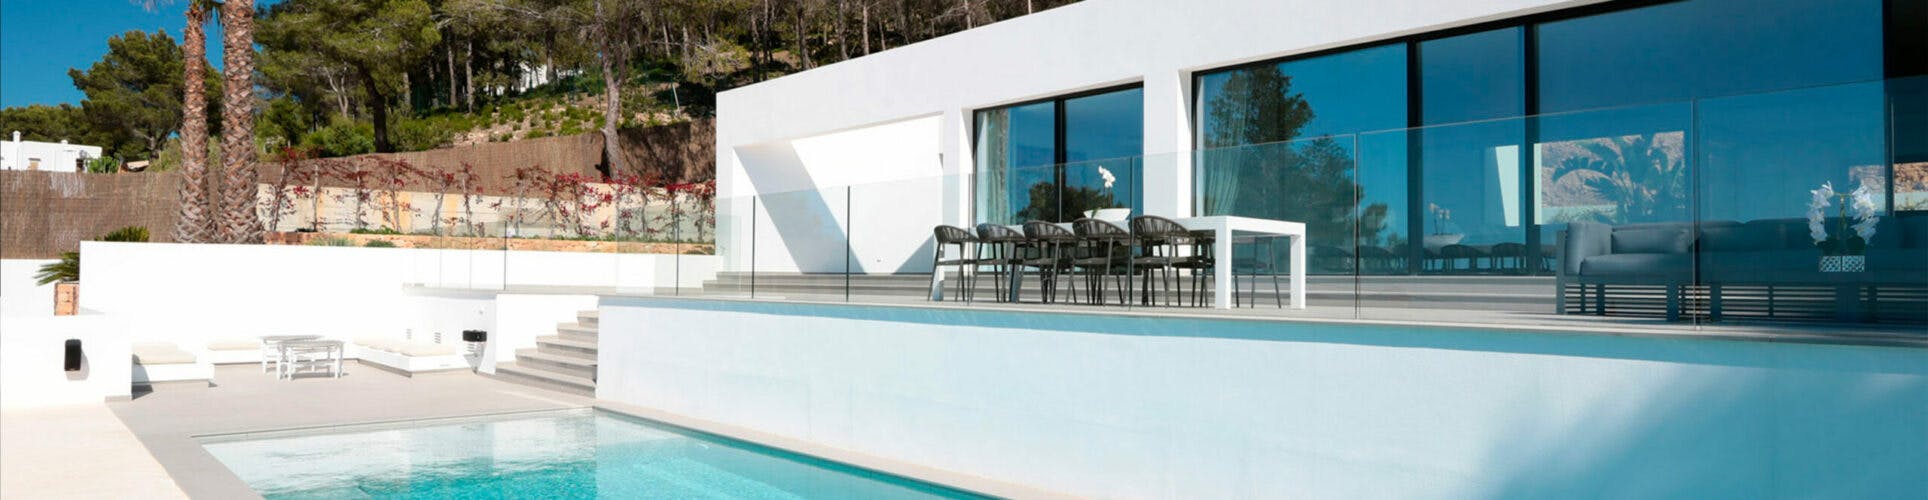 Image of sirocco swimmingpool 3 1 scaled e1604663163183 in Villa Omnia, Ibiza met Dekton en Silestone - Cosentino